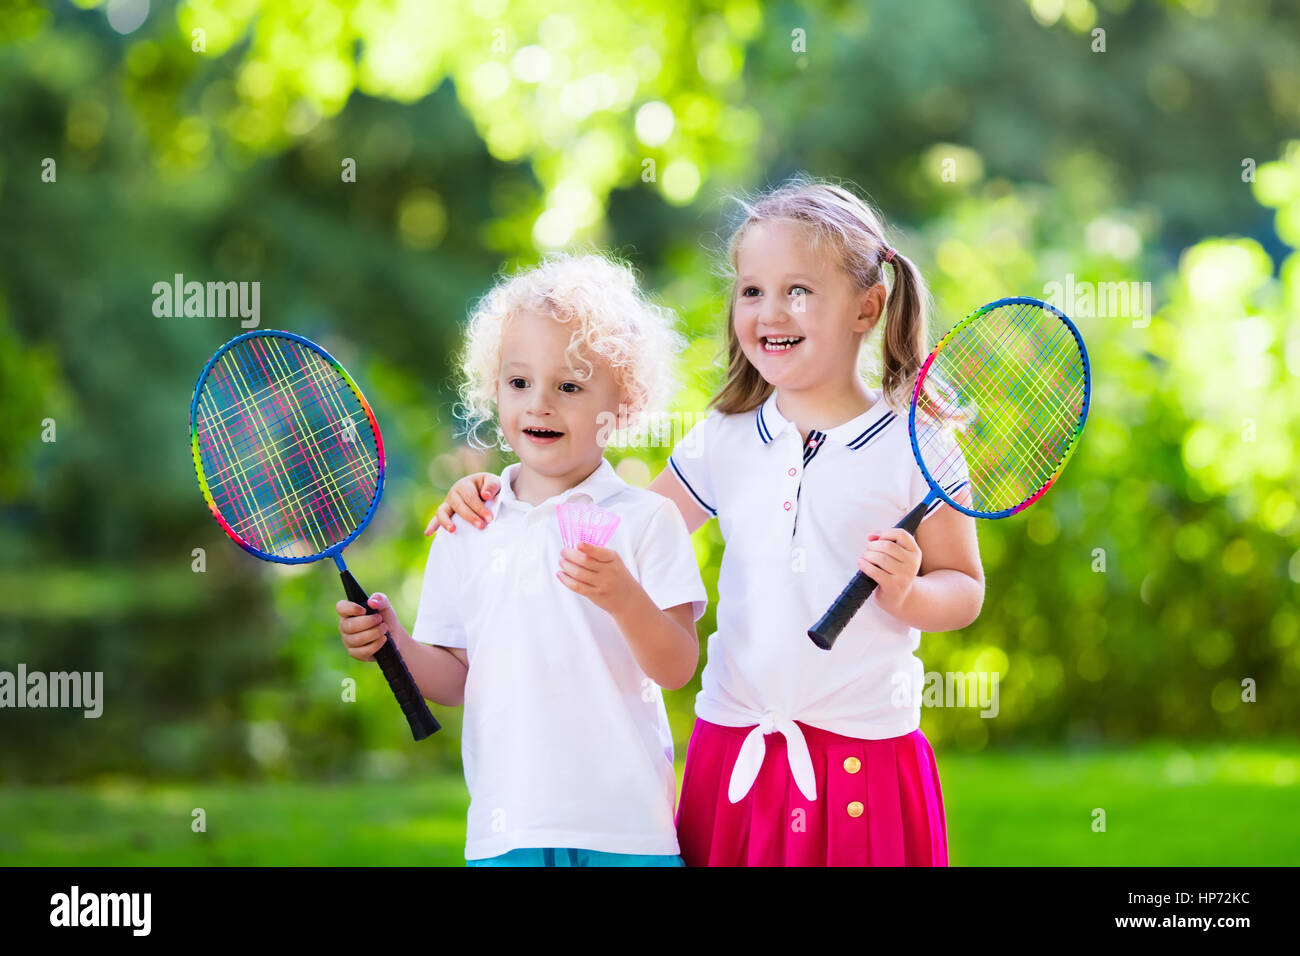 Aktive Vorschul Mädchen und Jungen spielen Badminton im Freibad im Sommer.  Kinder spielen Tennis. Schulsport für Kinder. Schläger und Federball spor  Stockfotografie - Alamy